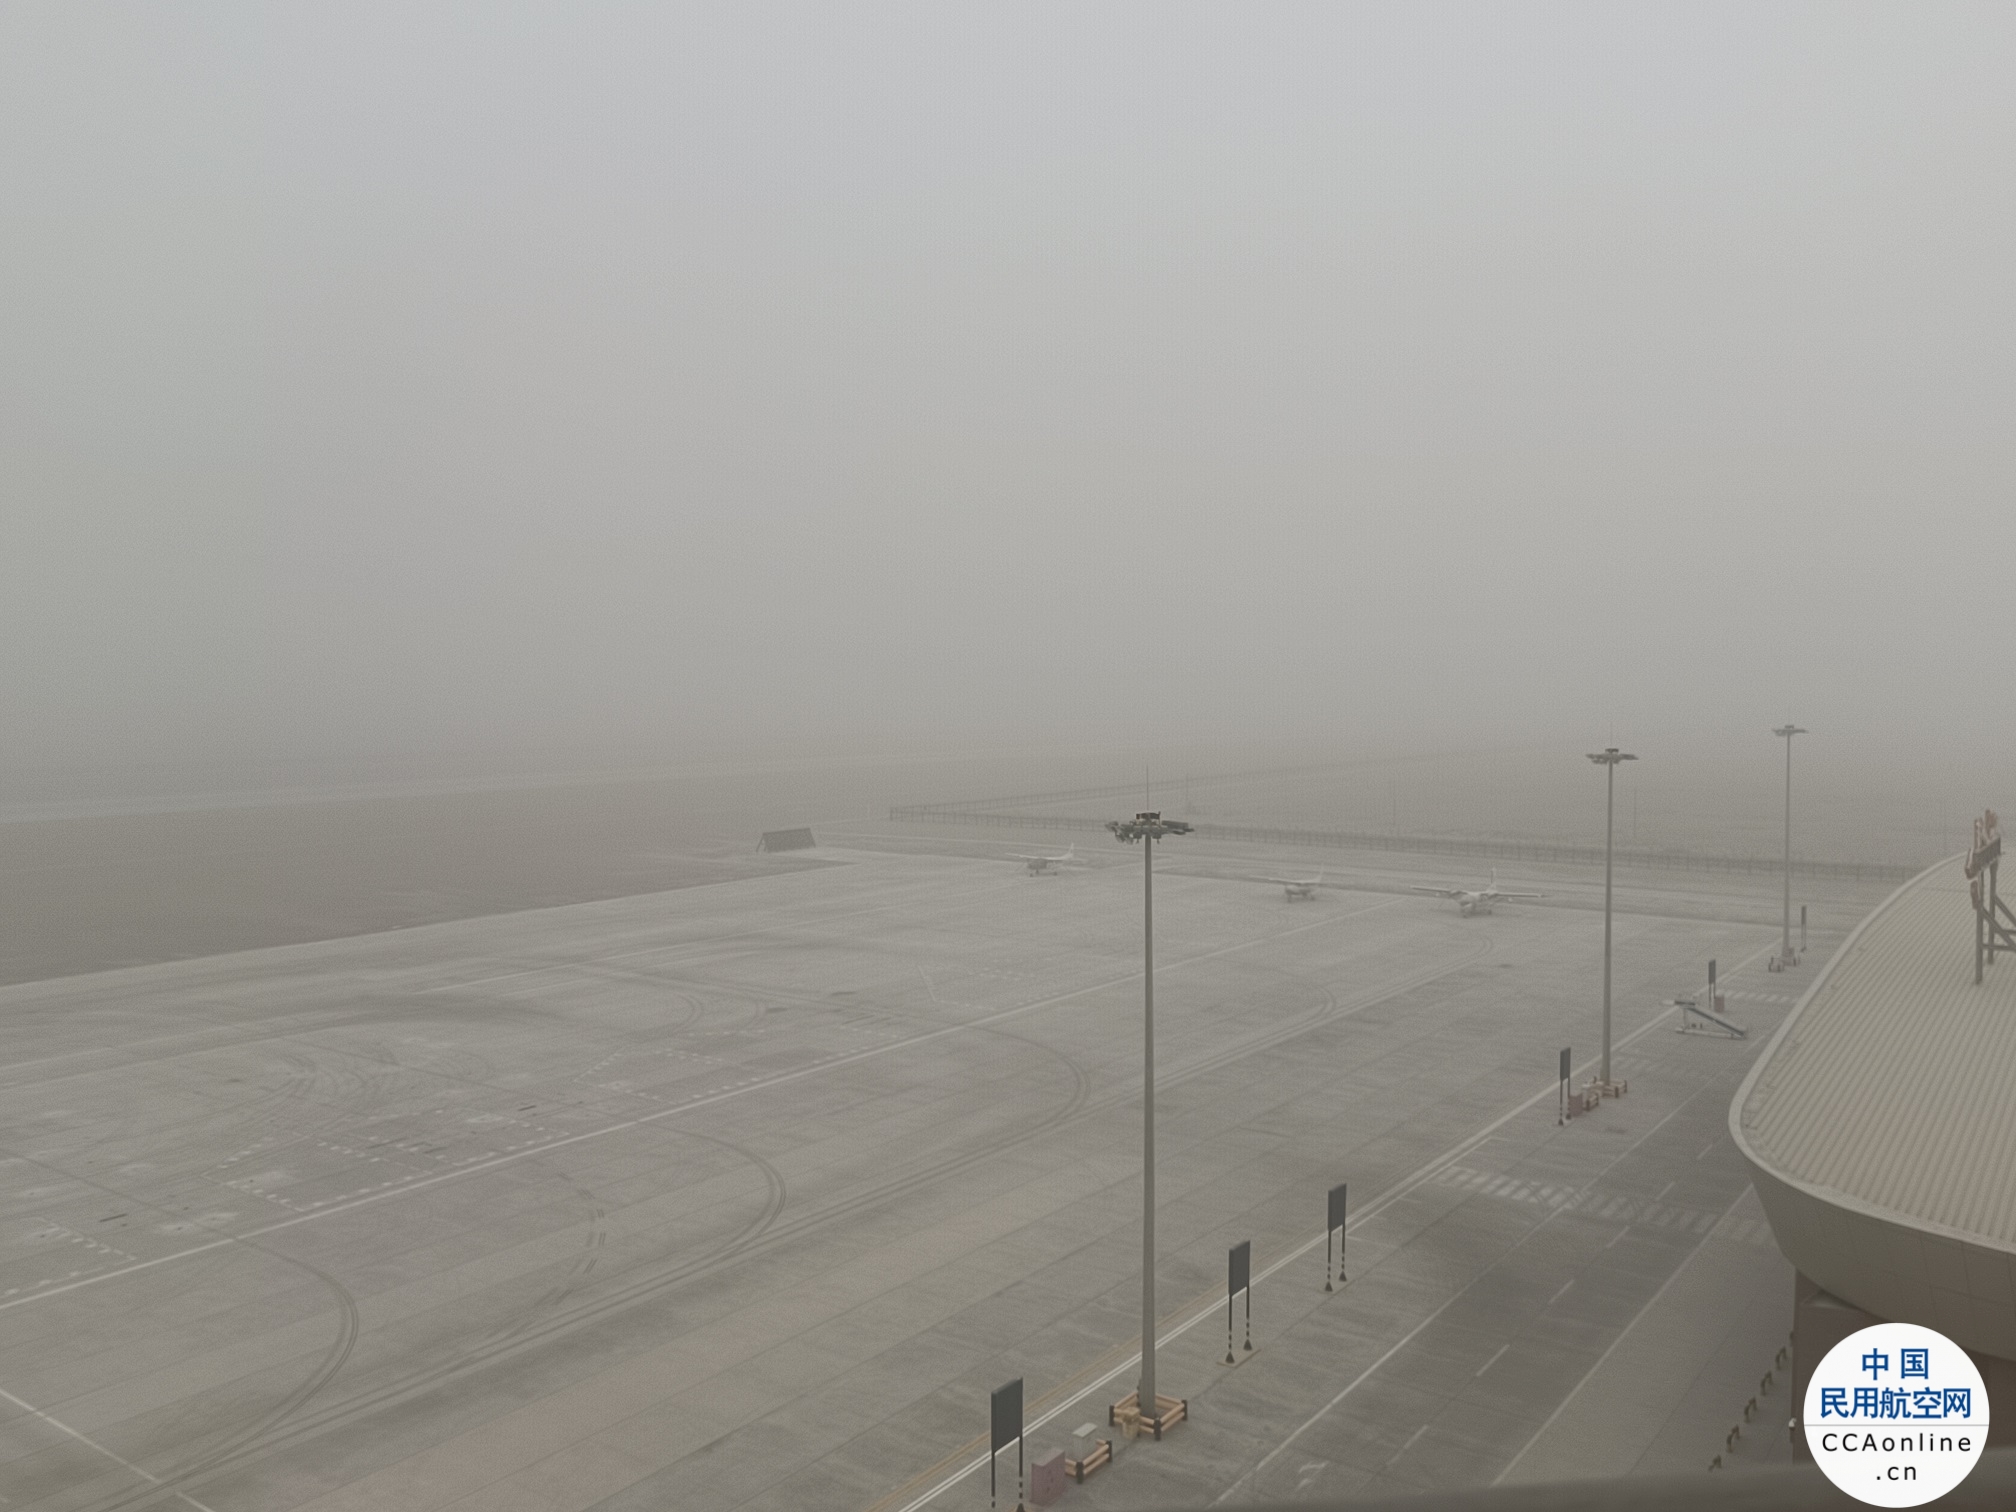 若羌楼兰机场积极应对沙暴恶劣天气